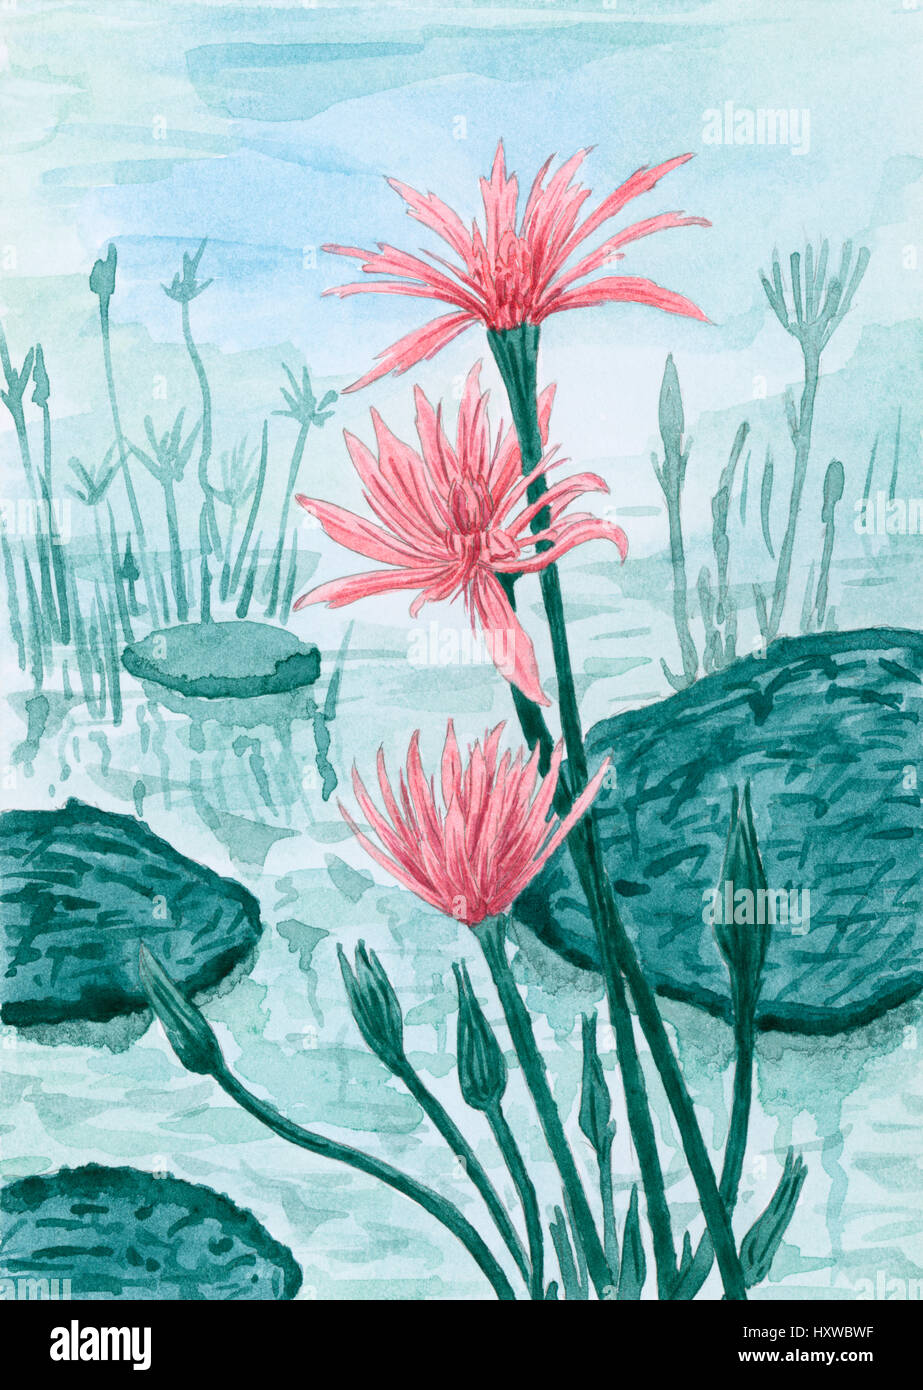 Fantasy fiori rossi sulla superficie dell'acqua con foglie e piante.  Acquerello su carta Foto stock - Alamy